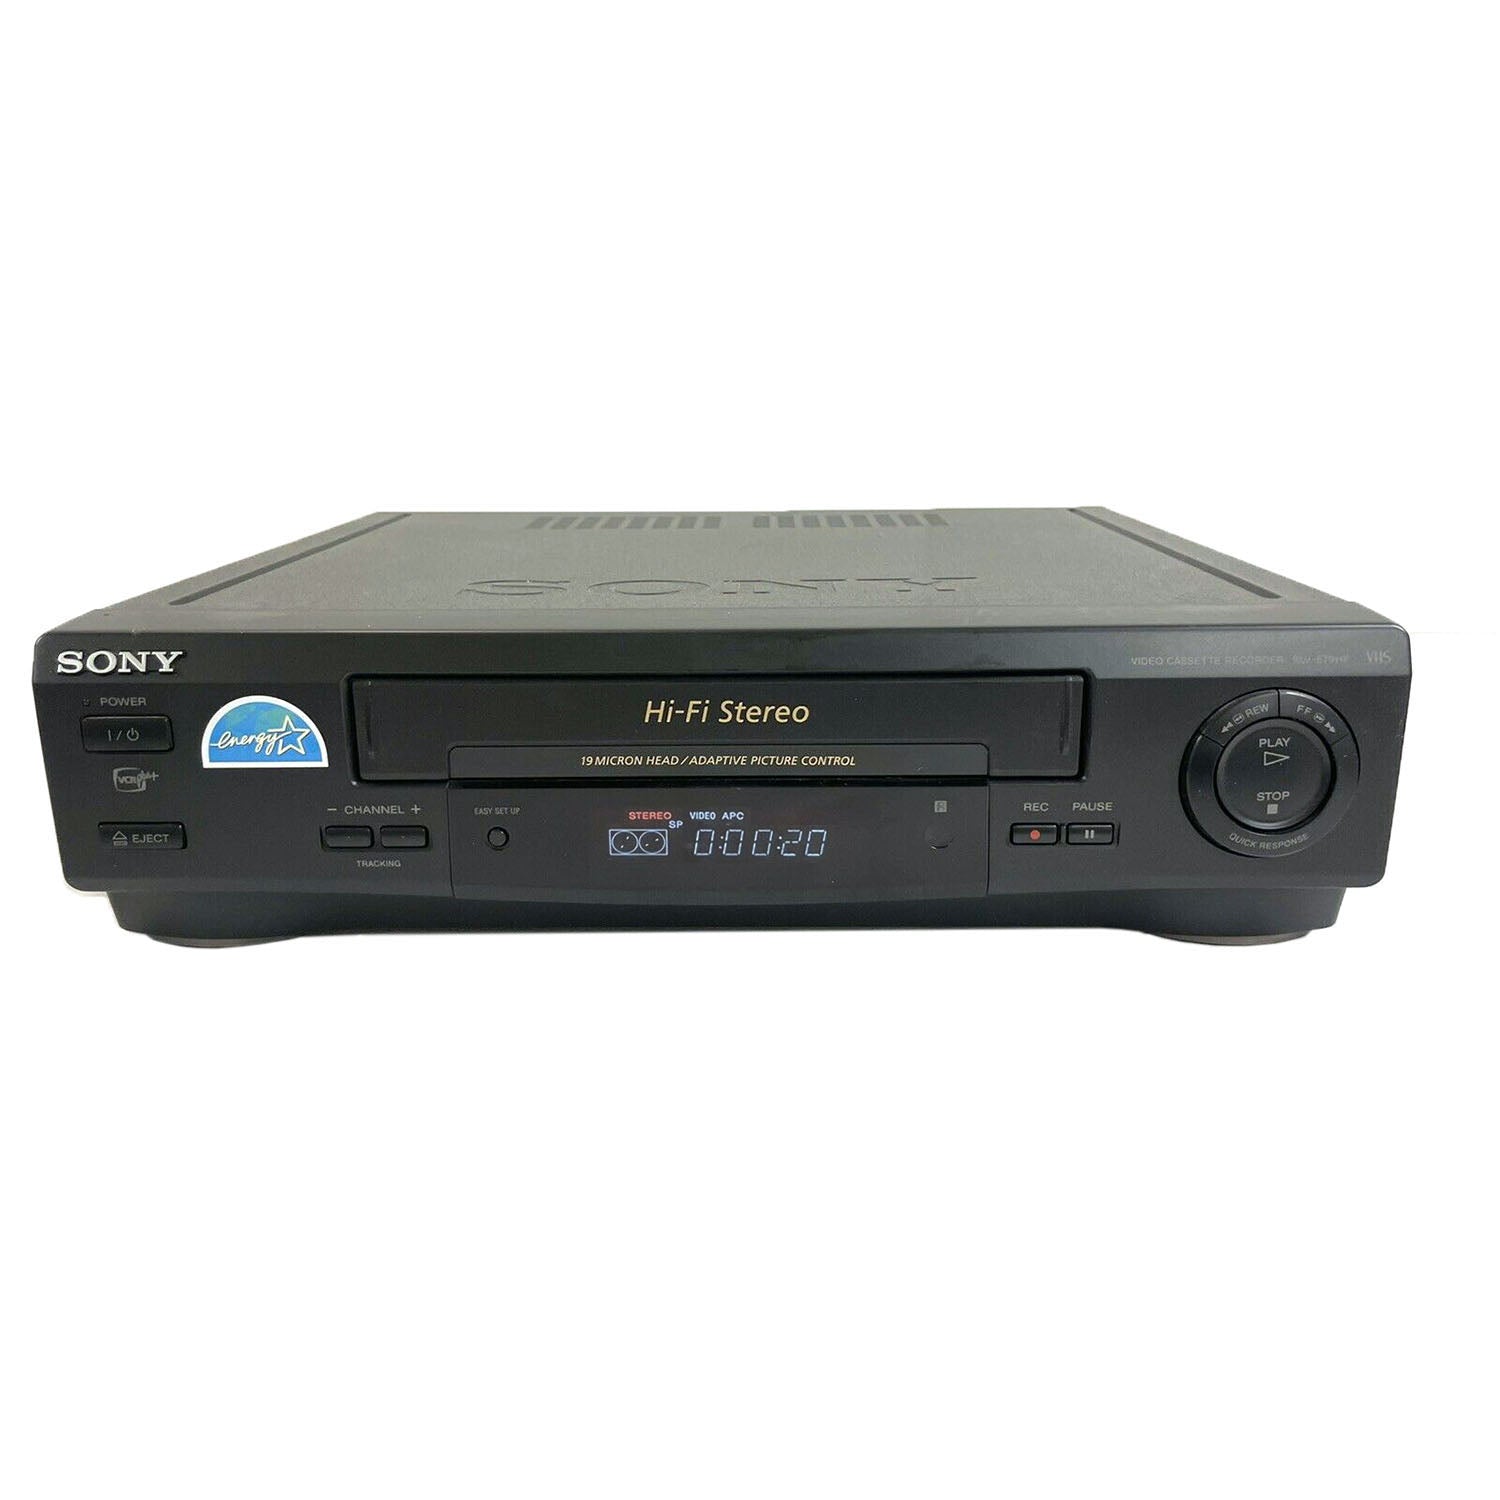 Sony SLV-679HF VCR, 4-Head Hi-Fi Stereo